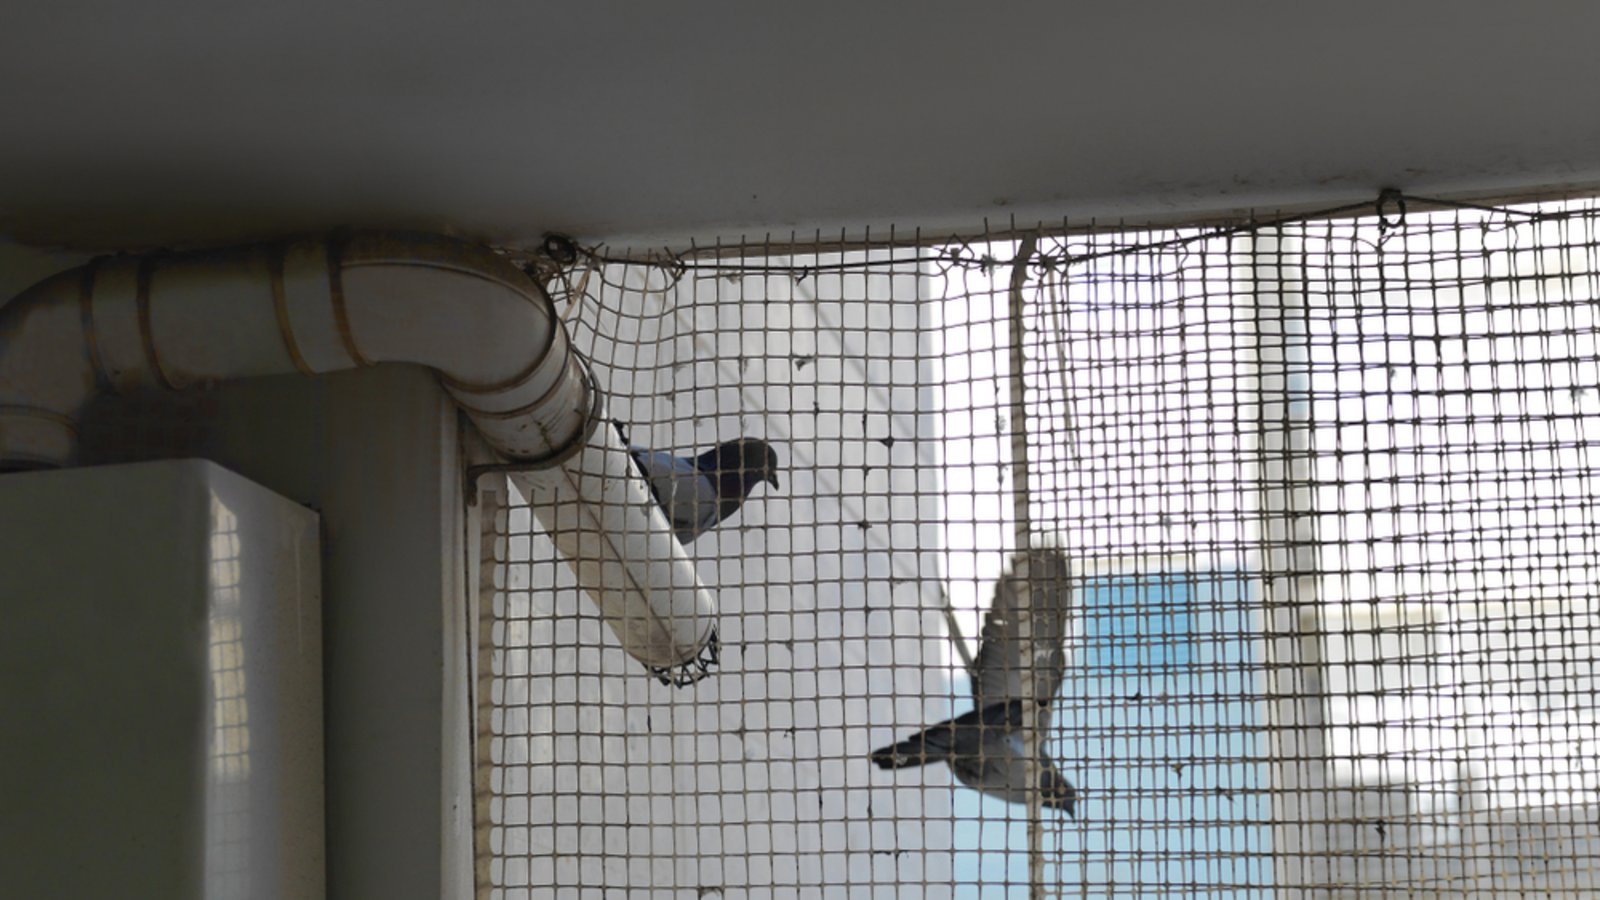 Vogelnetze sind die effektivste Abwehr gegen Tauben.Foto: victoras / shutterstock.com